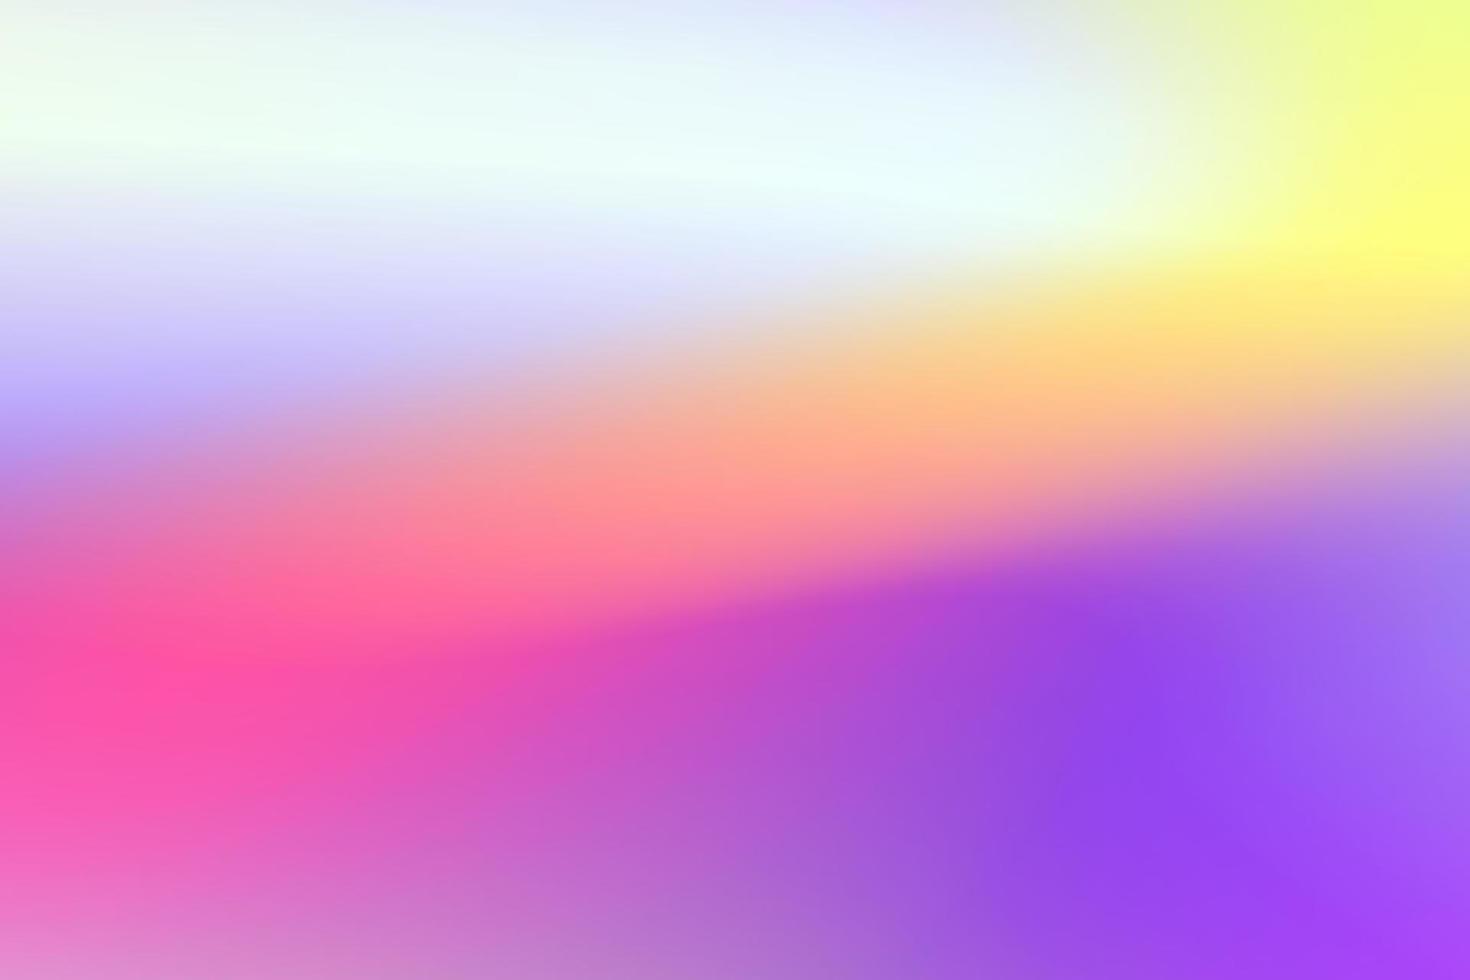 Rainbow unicorn background vector abstrac